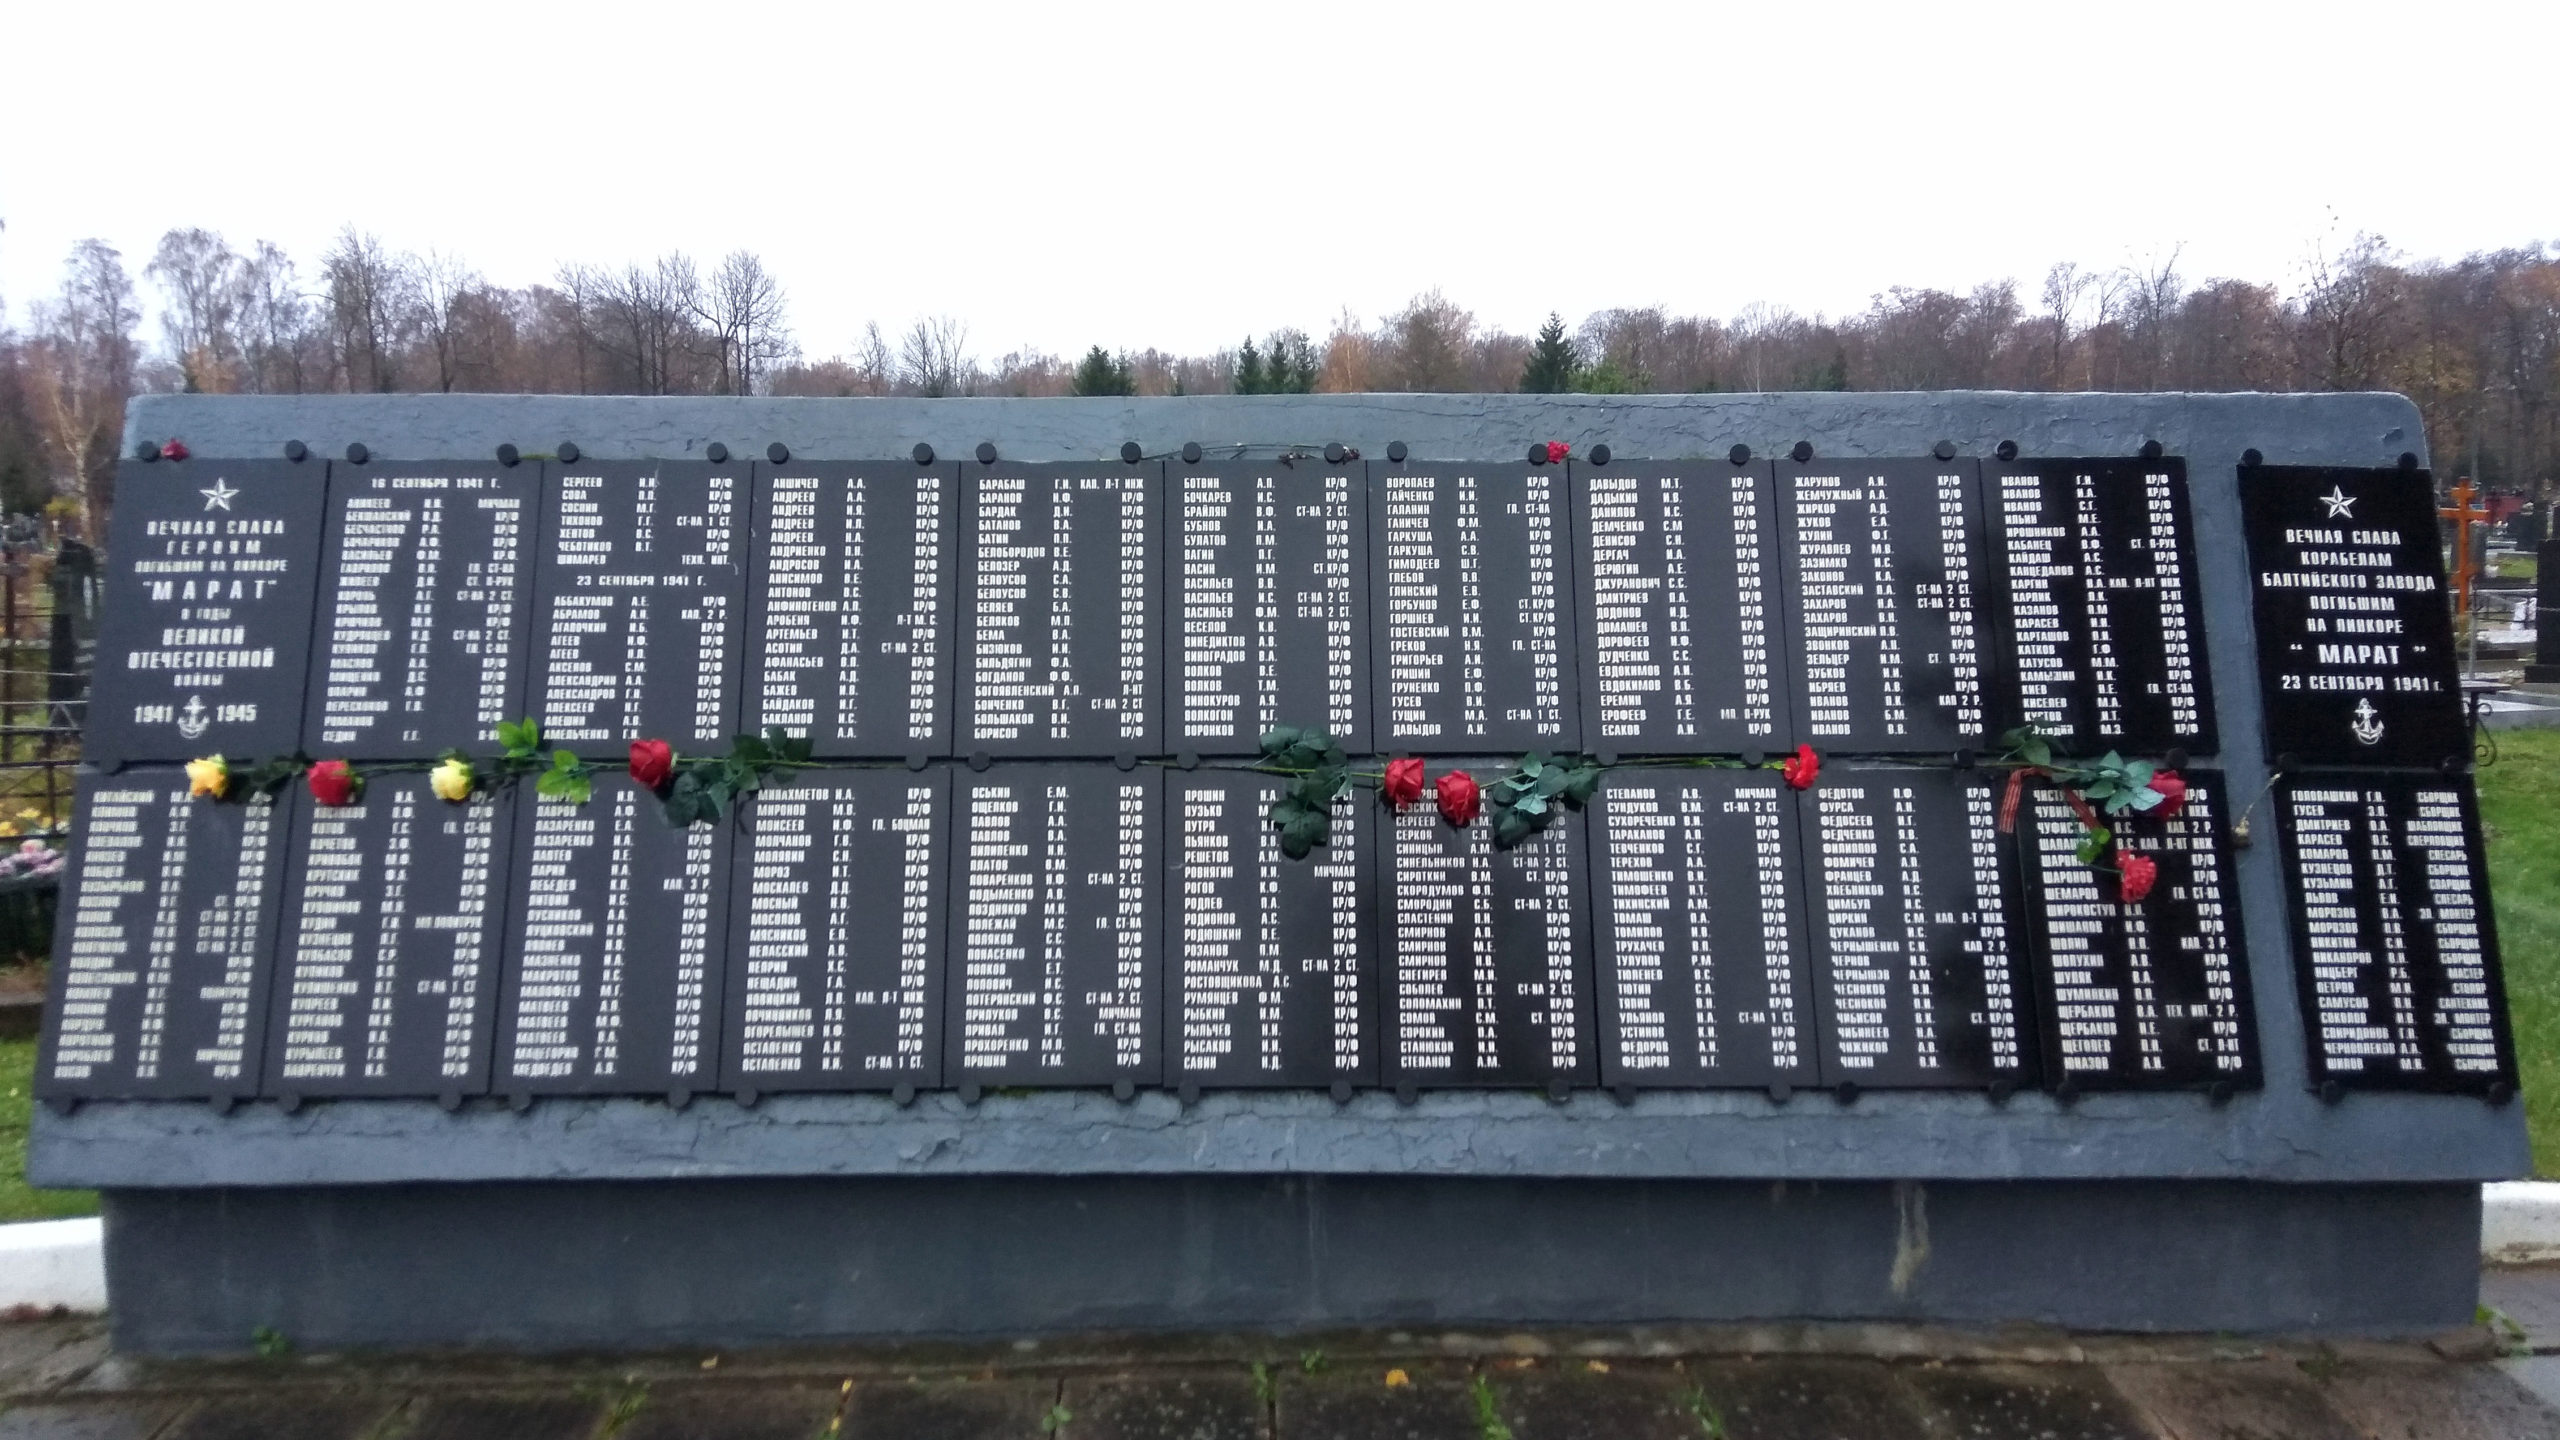 Мемориальная плита с фамилиями погибших членов экипажа линкора «Марат», г. Кронштадт